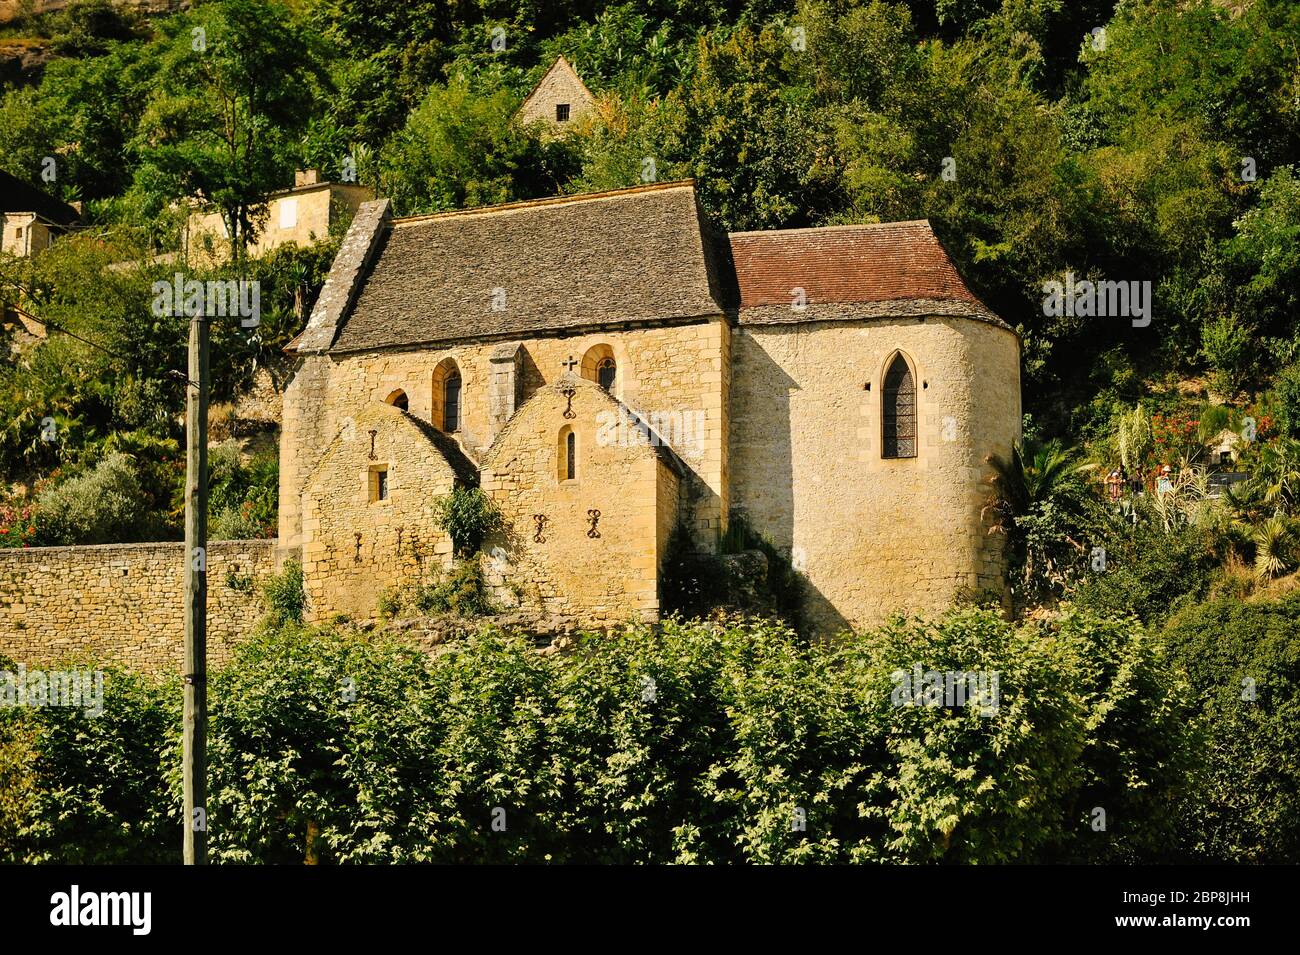 Die romanische Kapelle des Dorfes eines der schönsten Dörfer in Frankreich La Roque-Gageac in der Abendsonne – Bilddatum Samstag 31 Ju Stockfoto